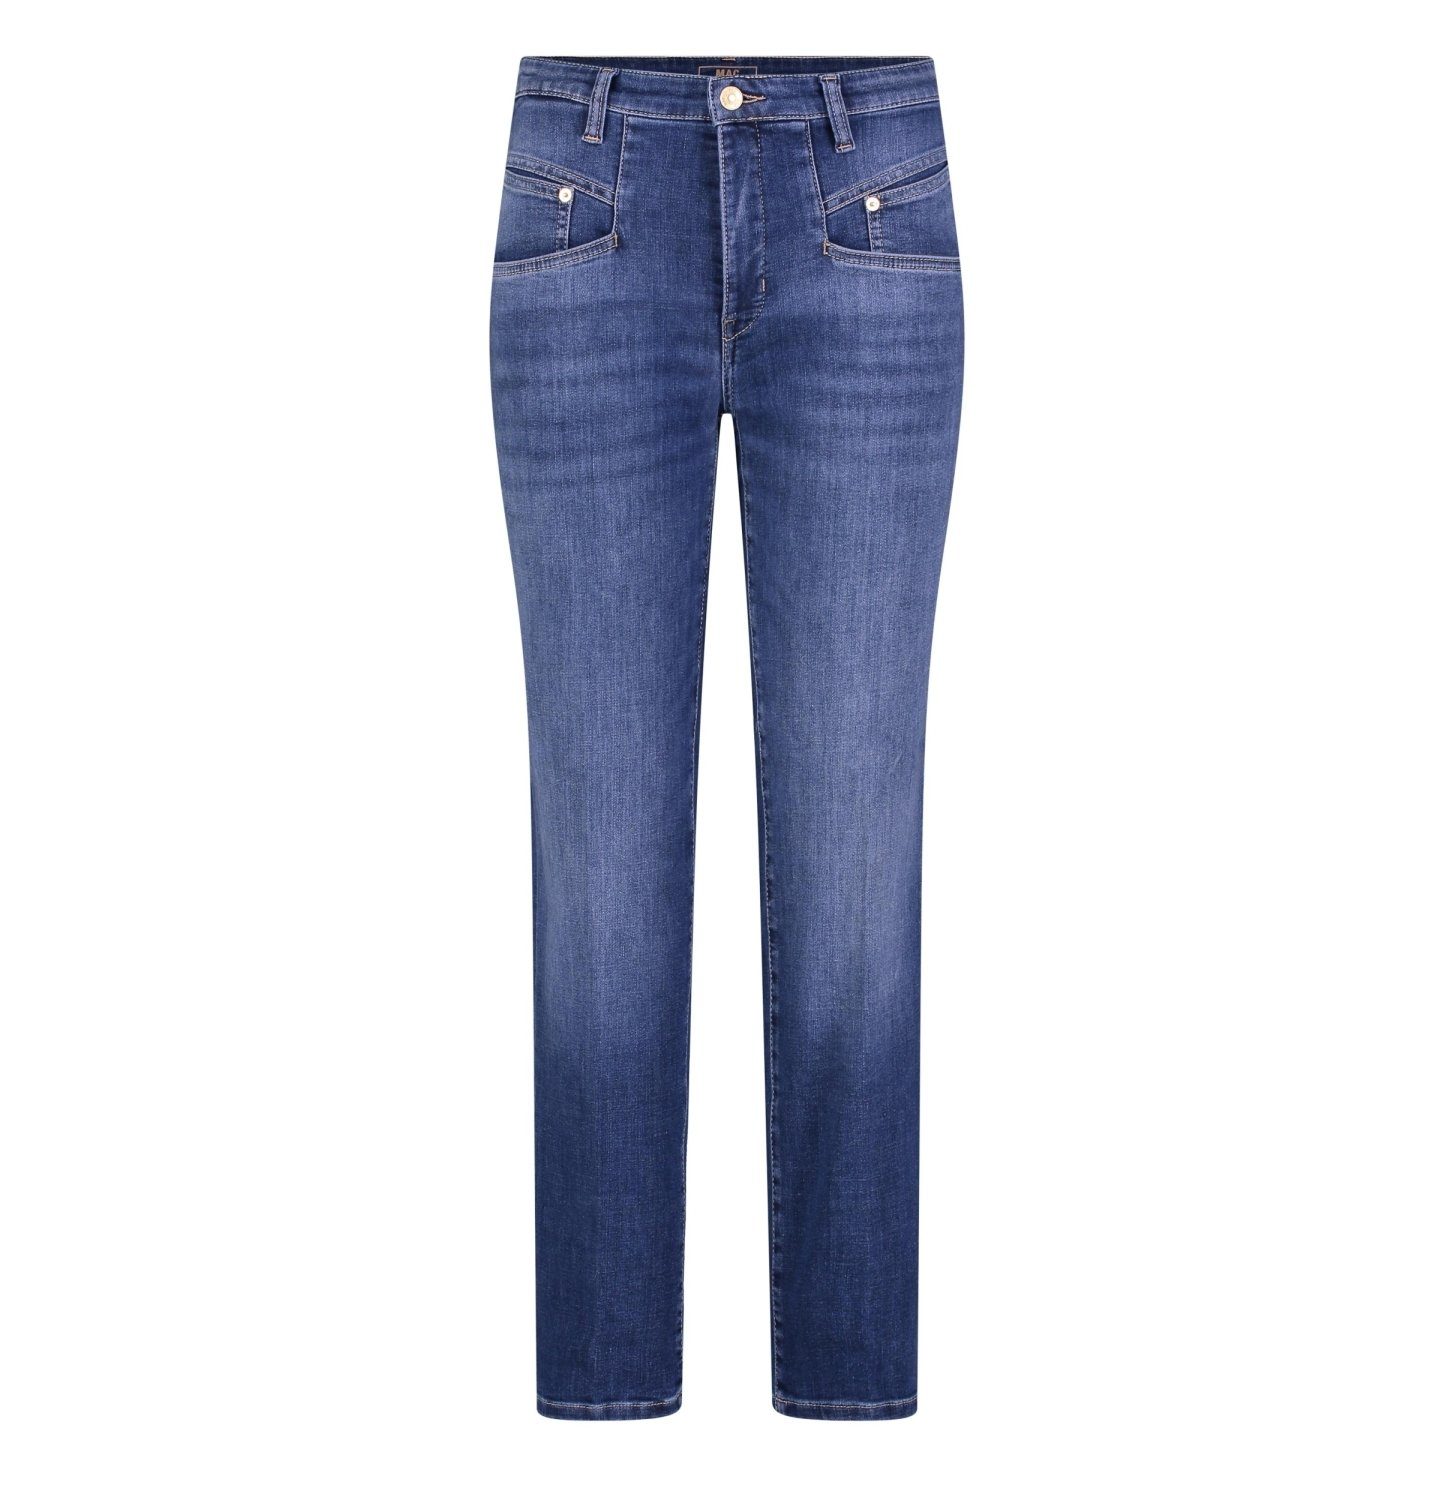 5-Pocket-Jeans MAC JEANS - RICH, denim Light authentic